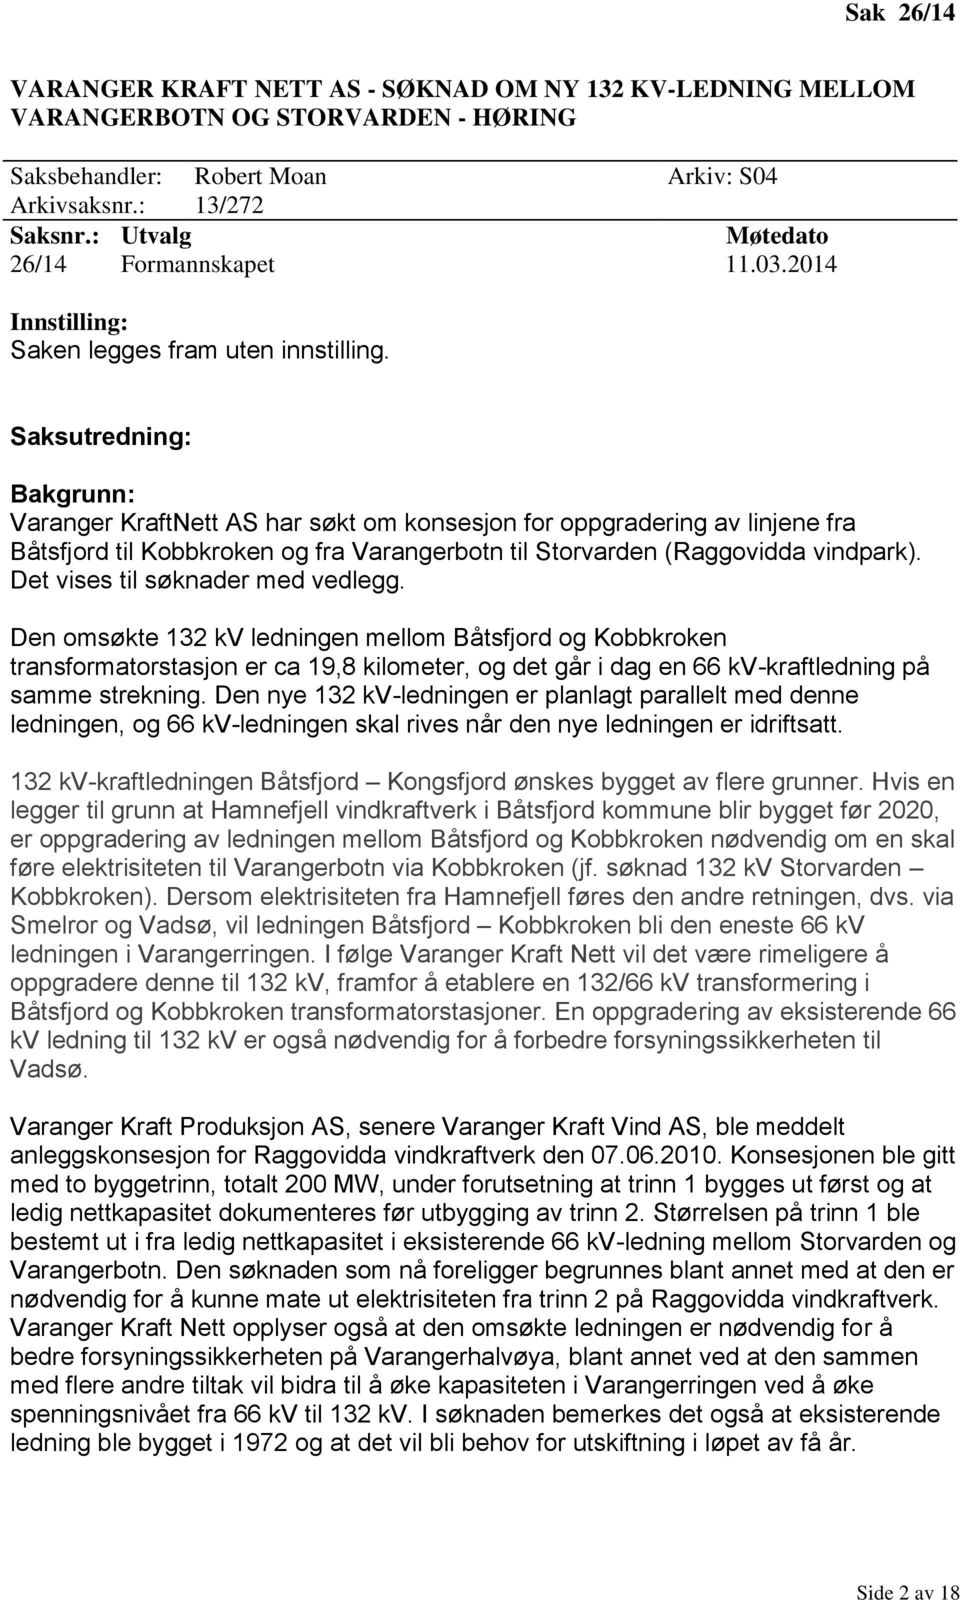 Saksutredning: Bakgrunn: Varanger KraftNett AS har søkt om konsesjon for oppgradering av linjene fra Båtsfjord til Kobbkroken og fra Varangerbotn til Storvarden (Raggovidda vindpark).